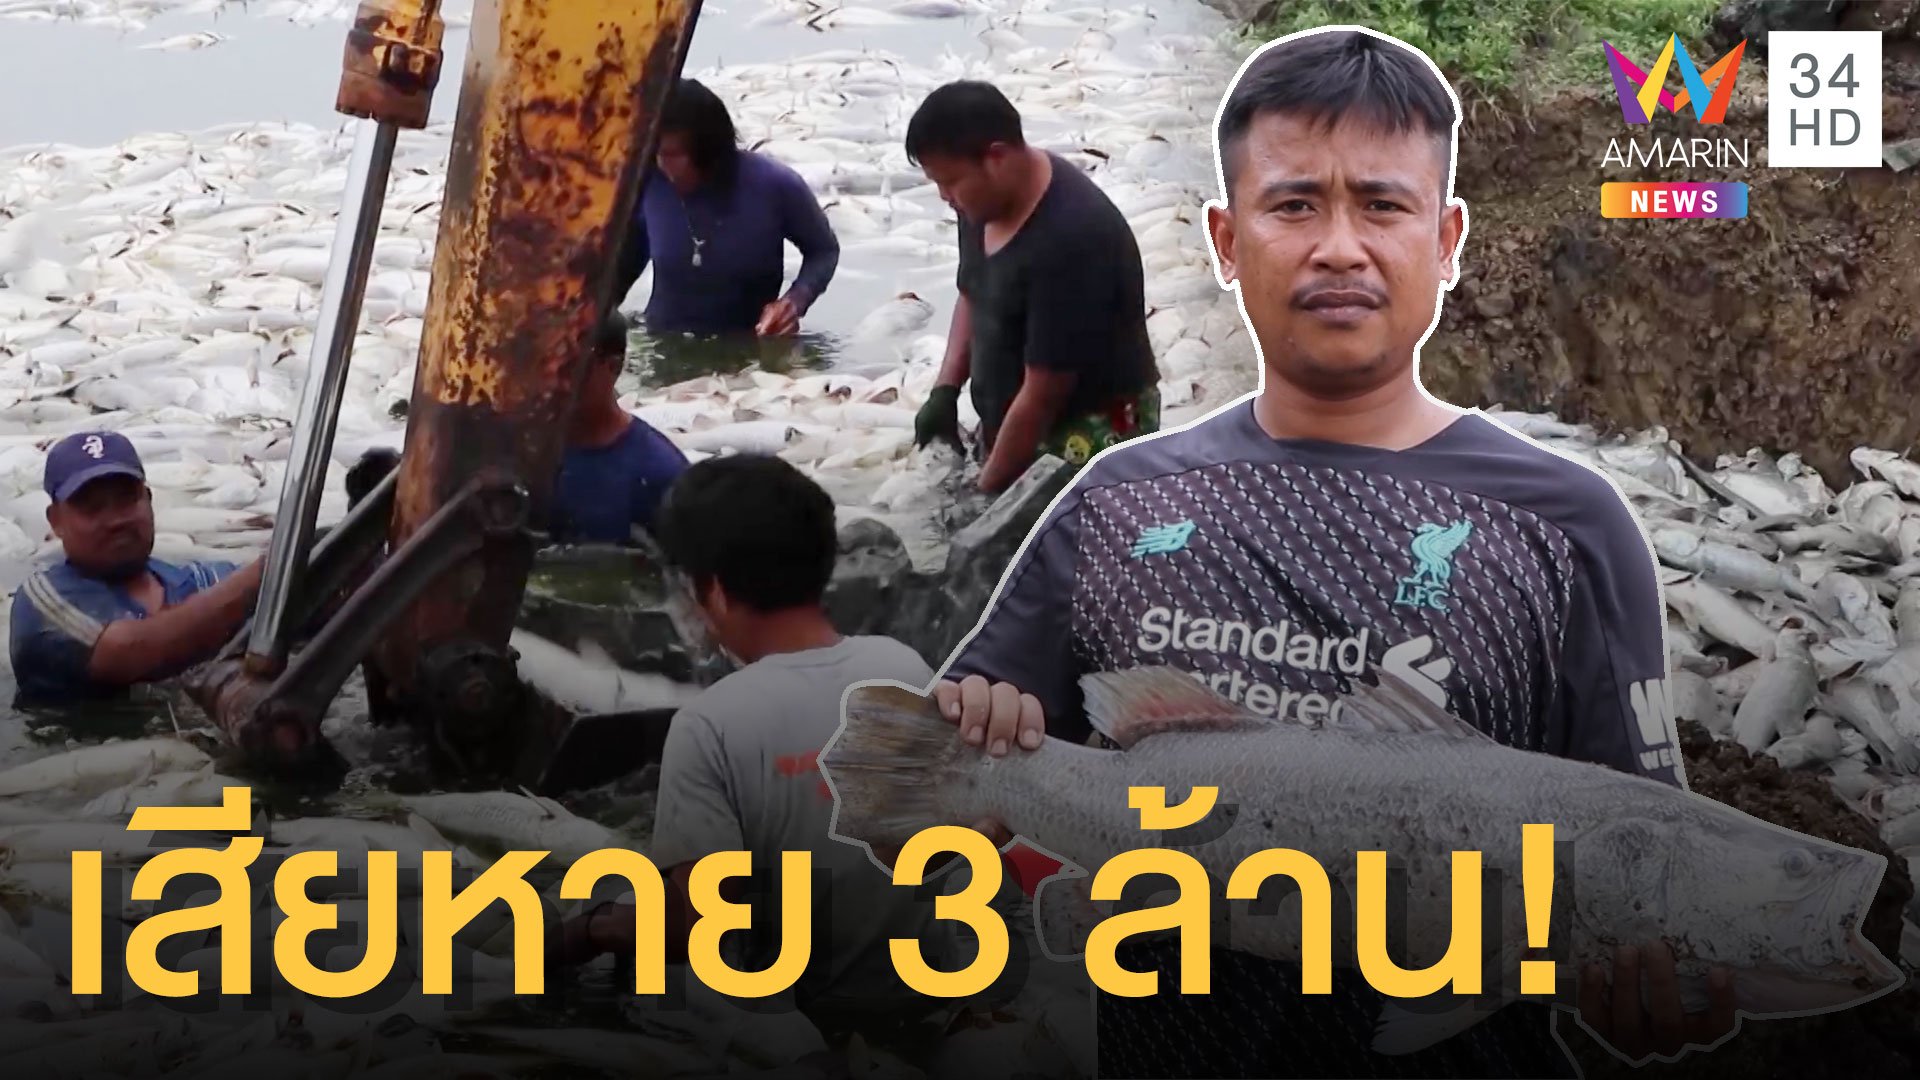 คนเลี้ยงปลากะพงน้ำตาร่วง ปลาตายยกบ่อสูญ 3 ล้าน! | ข่าวอรุณอมรินทร์ | 25 พ.ค. 63 | AMARIN TVHD34